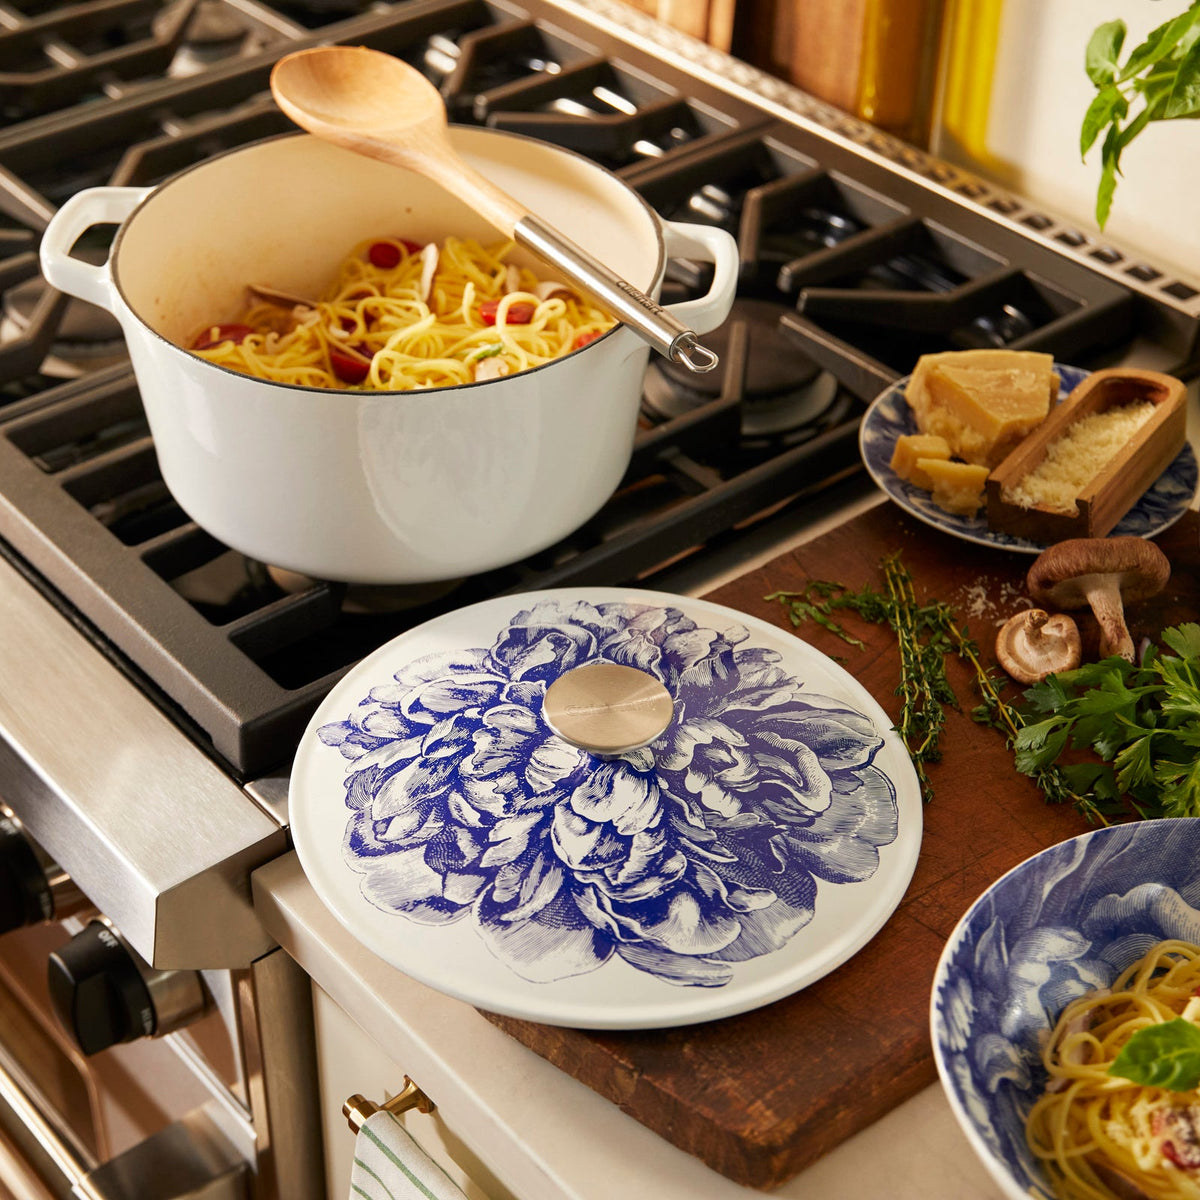 Description: A Cuisinart cast iron pot of pasta on a stove top.